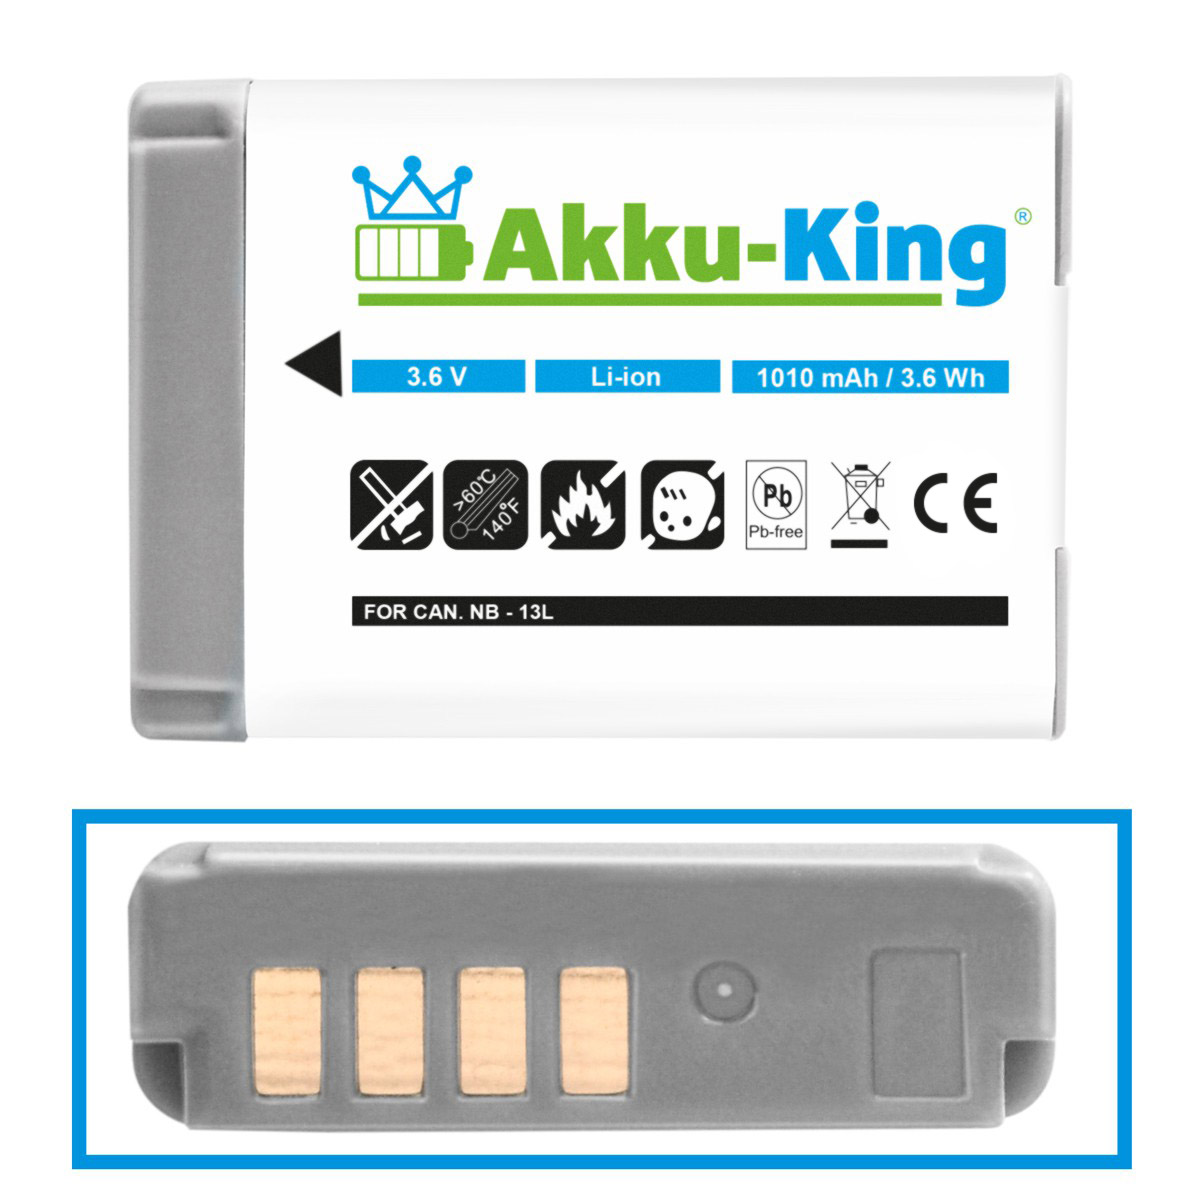 3.6 Akku Volt, Li-Ion NB-13L Canon 1010mAh mit AKKU-KING kompatibel Kamera-Akku,